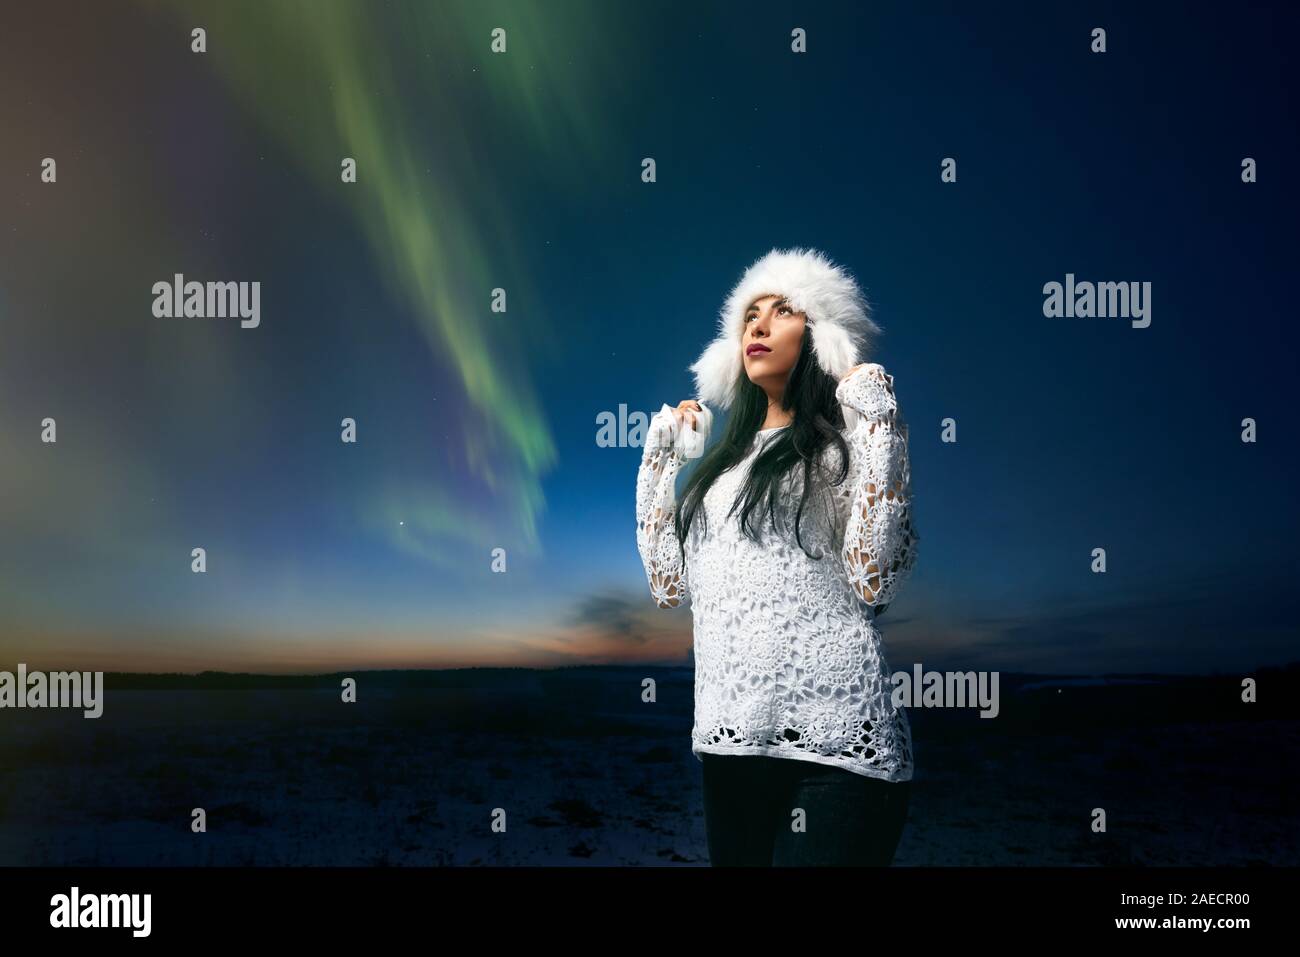 Schöne Mädchen in der stilvollen winter Hut und weißen gestrickten Bluse auf dem Hintergrund von Northern Lights in den Nachthimmel. Schöne Frau bewundern der Winter Ausstrahlung und Aurora. Konzept des modernen Kleidung für sie. Stockfoto